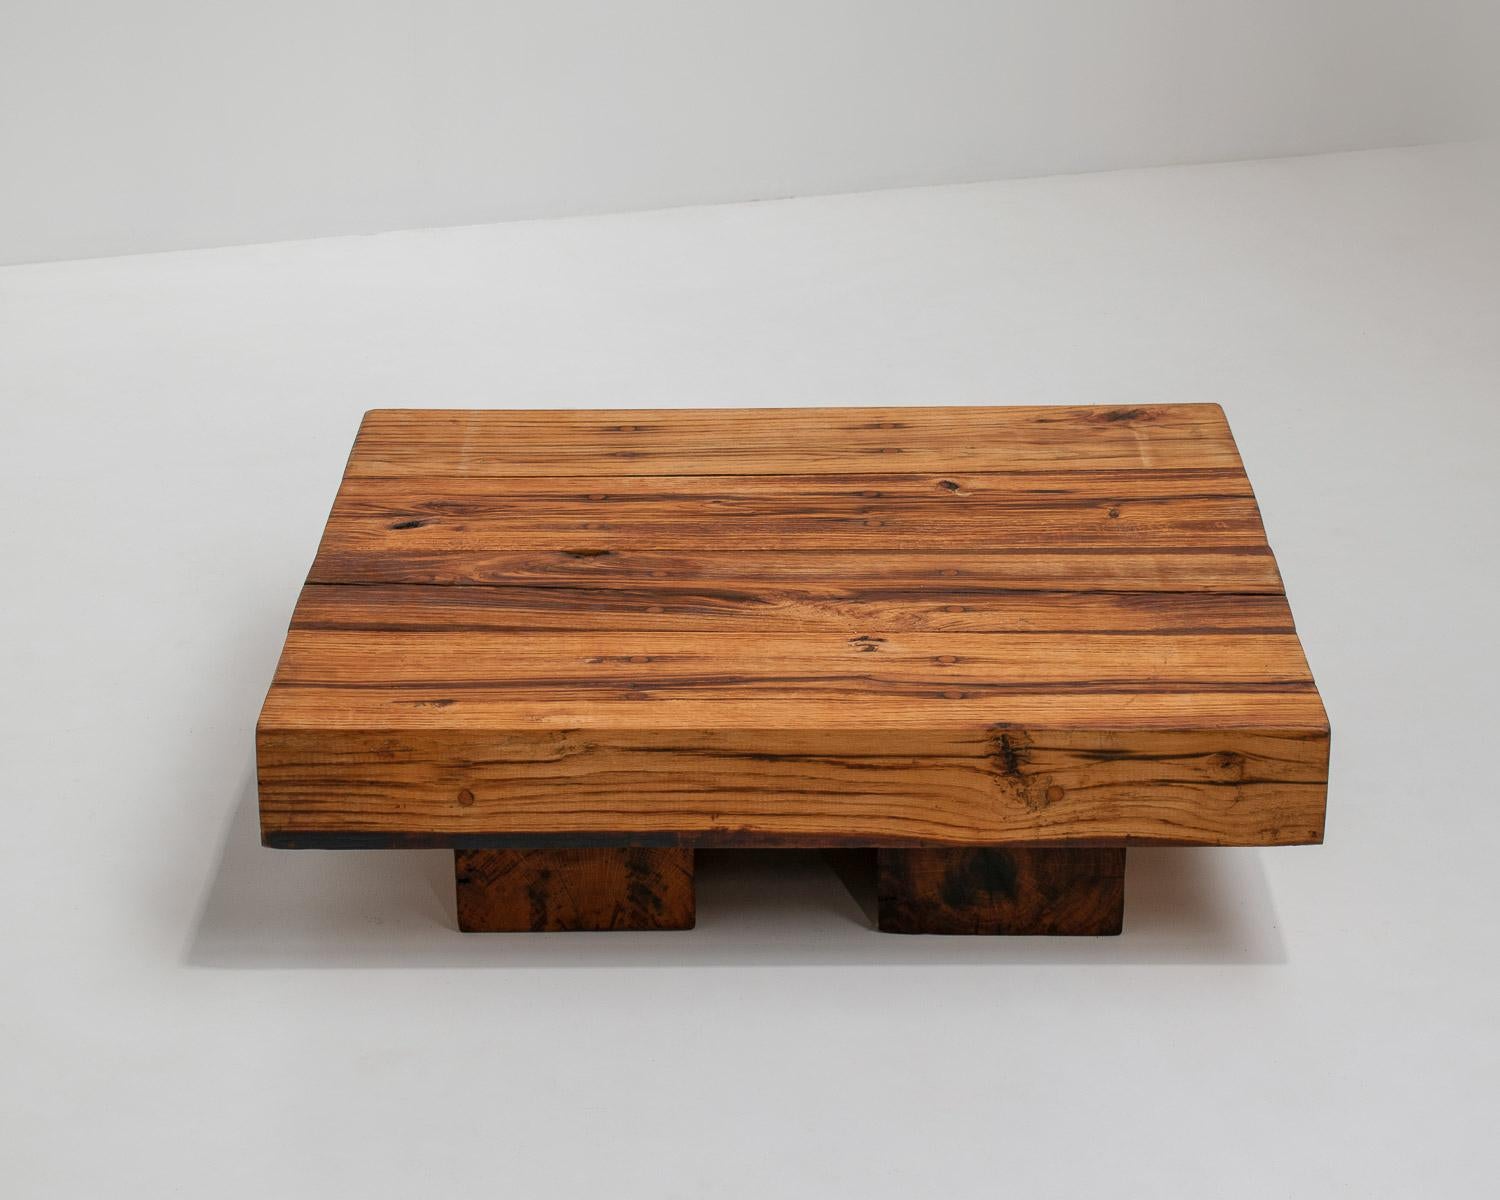 Table basse Wabi Sabi en chêne massif, France 1950s

La table parfaite, à la fois rustique et moderne, s'adapte à tout intérieur de style wabi-sabi, naturel, artisanal, brutaliste ou rustique. En raison de sa taille, il s'intègre parfaitement dans